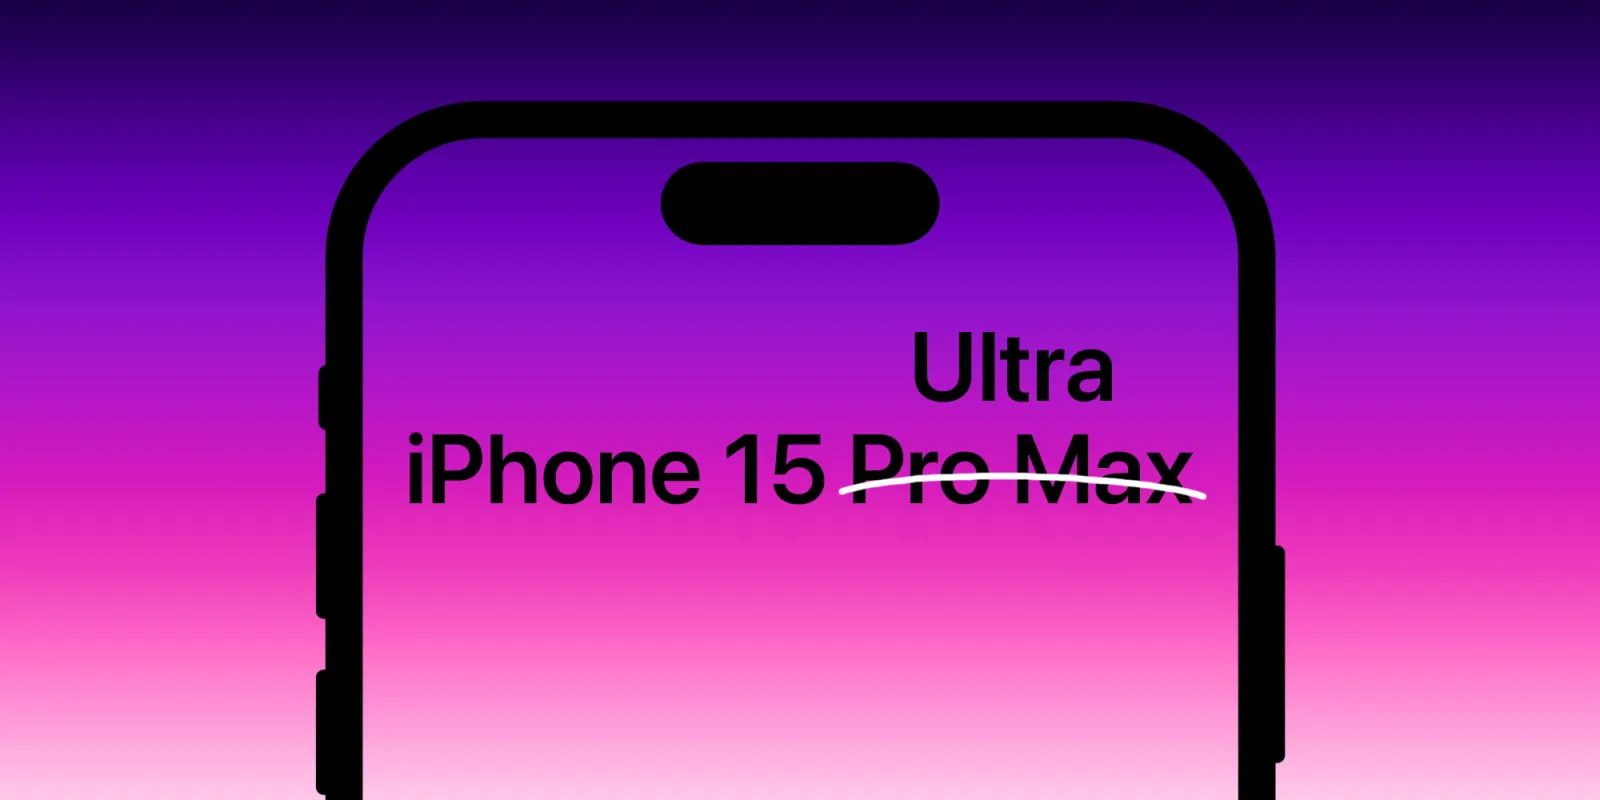 iPhone 15 Ultra - Đánh giá thương hiệu và tính năng của sản phẩm